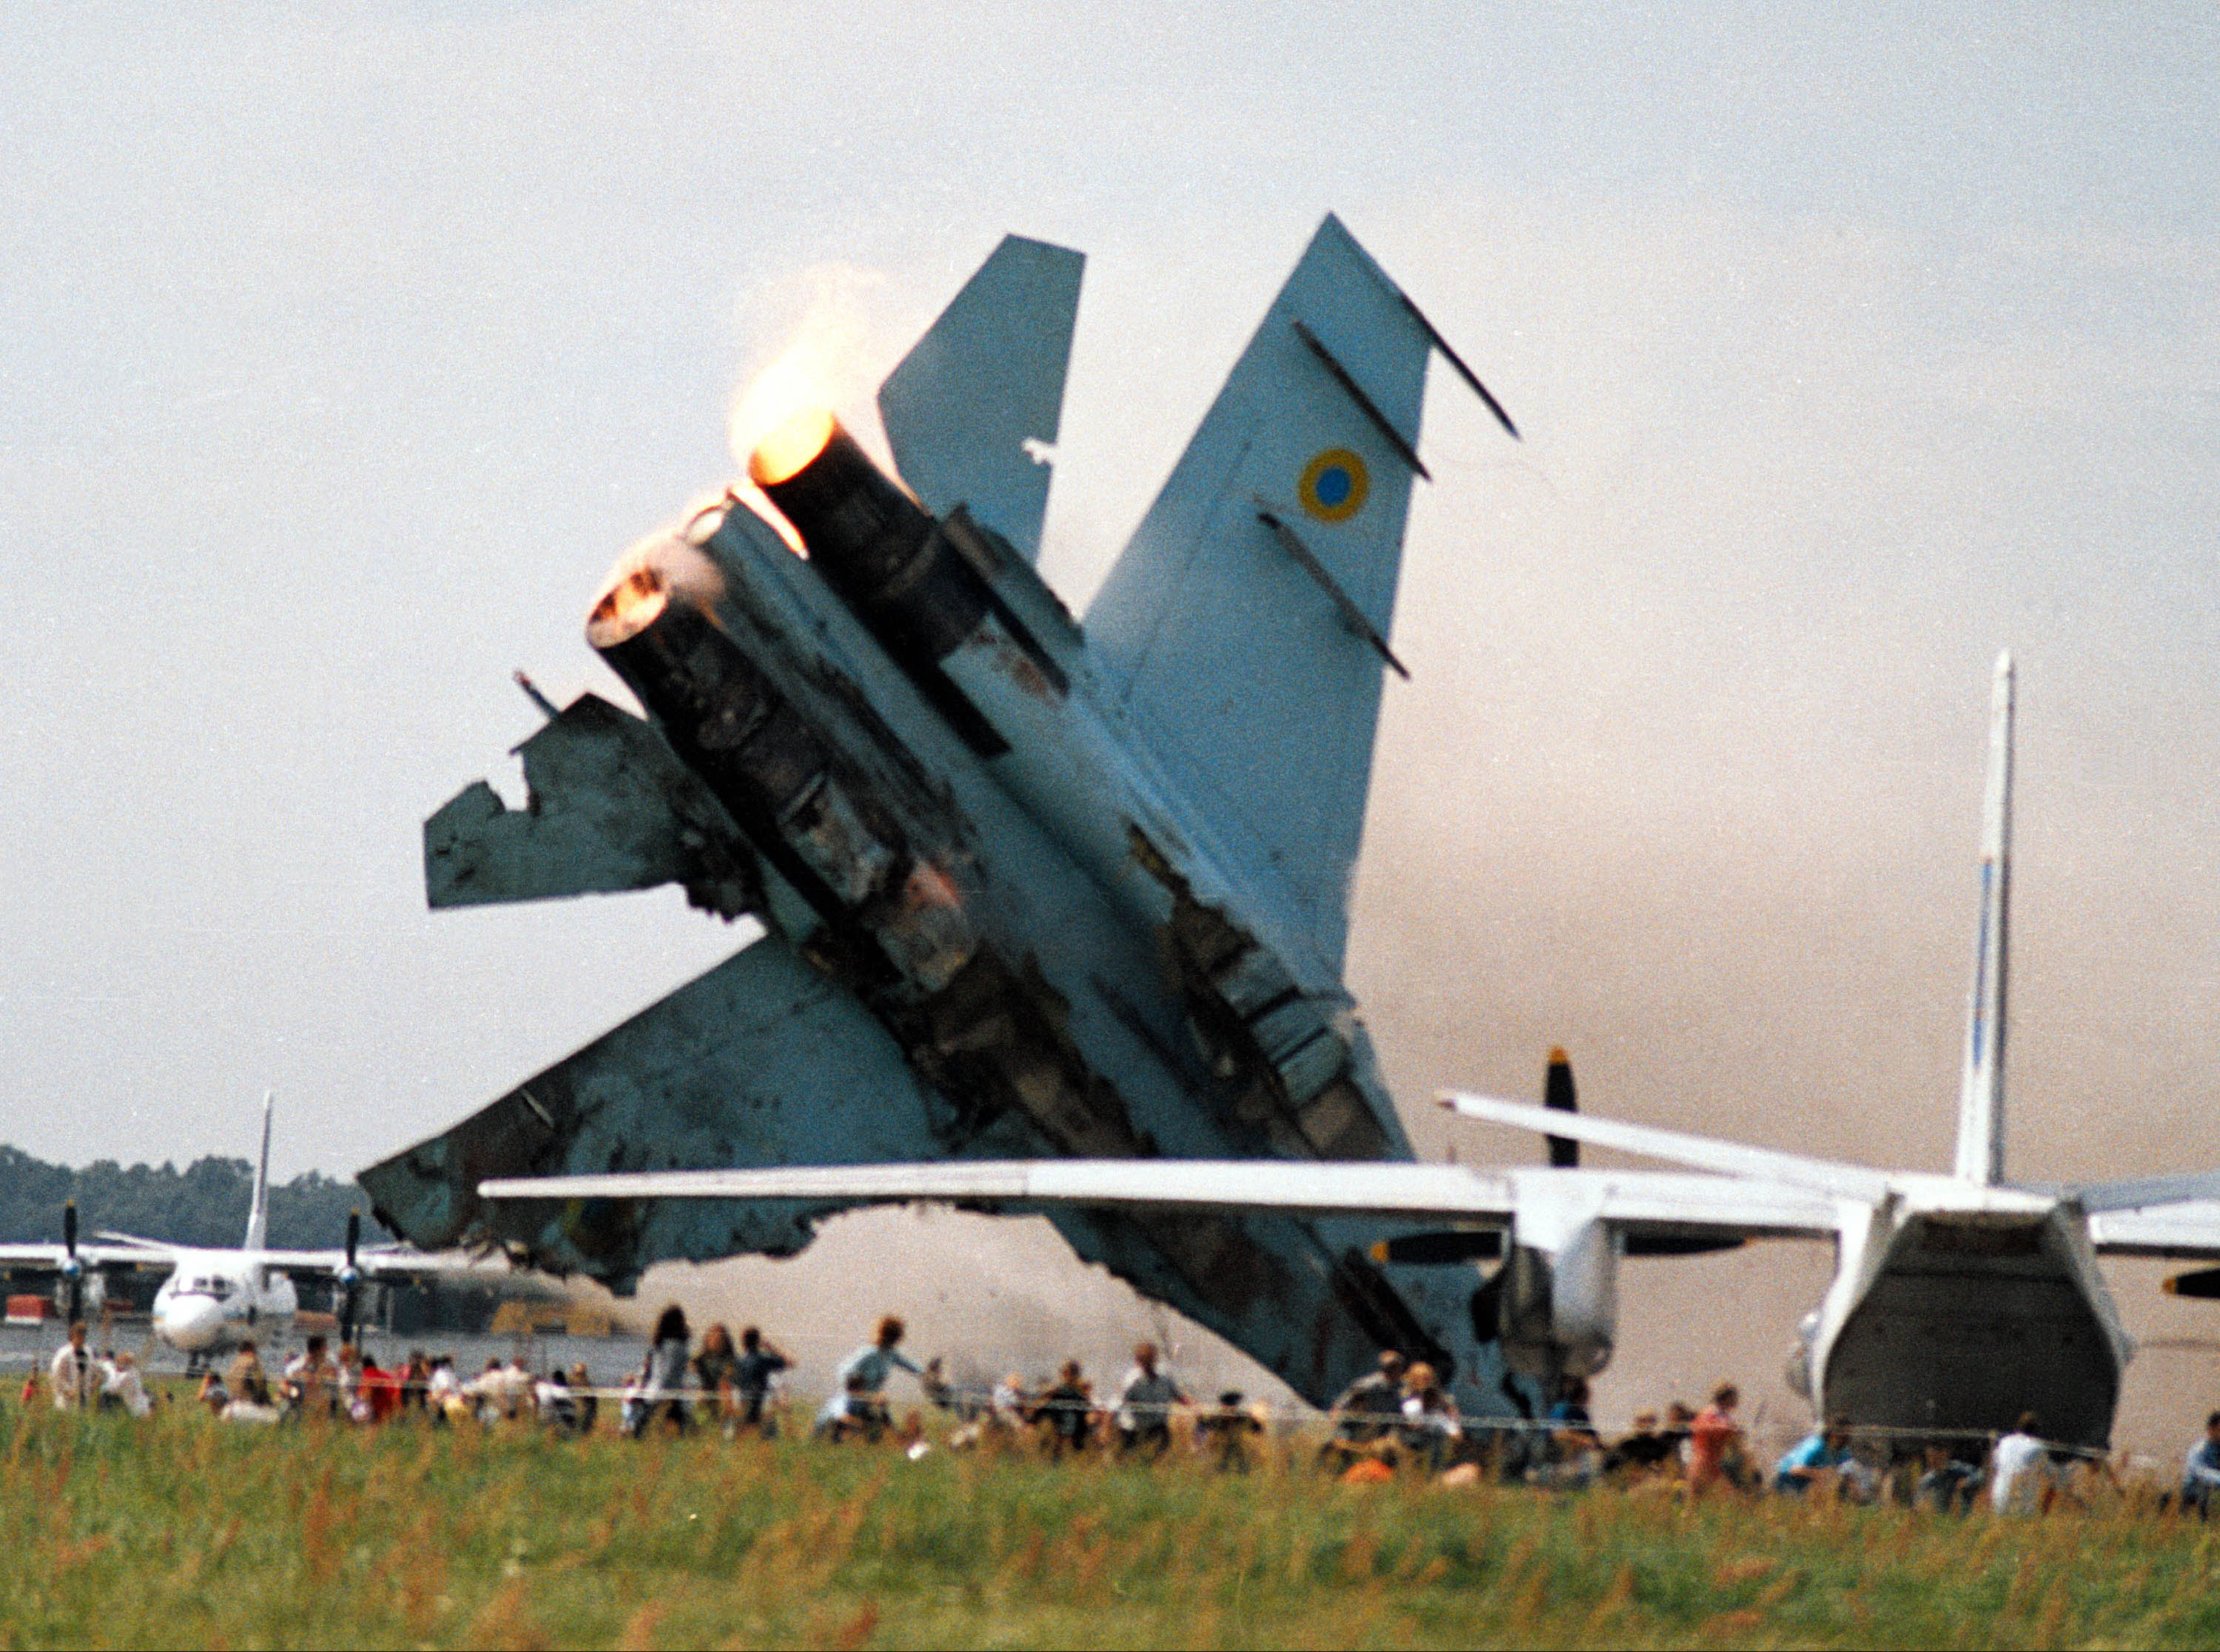 Літак на авіашоу у Скнилові під Львовом упав через самовпевненість пілота. Фото: Getty Images